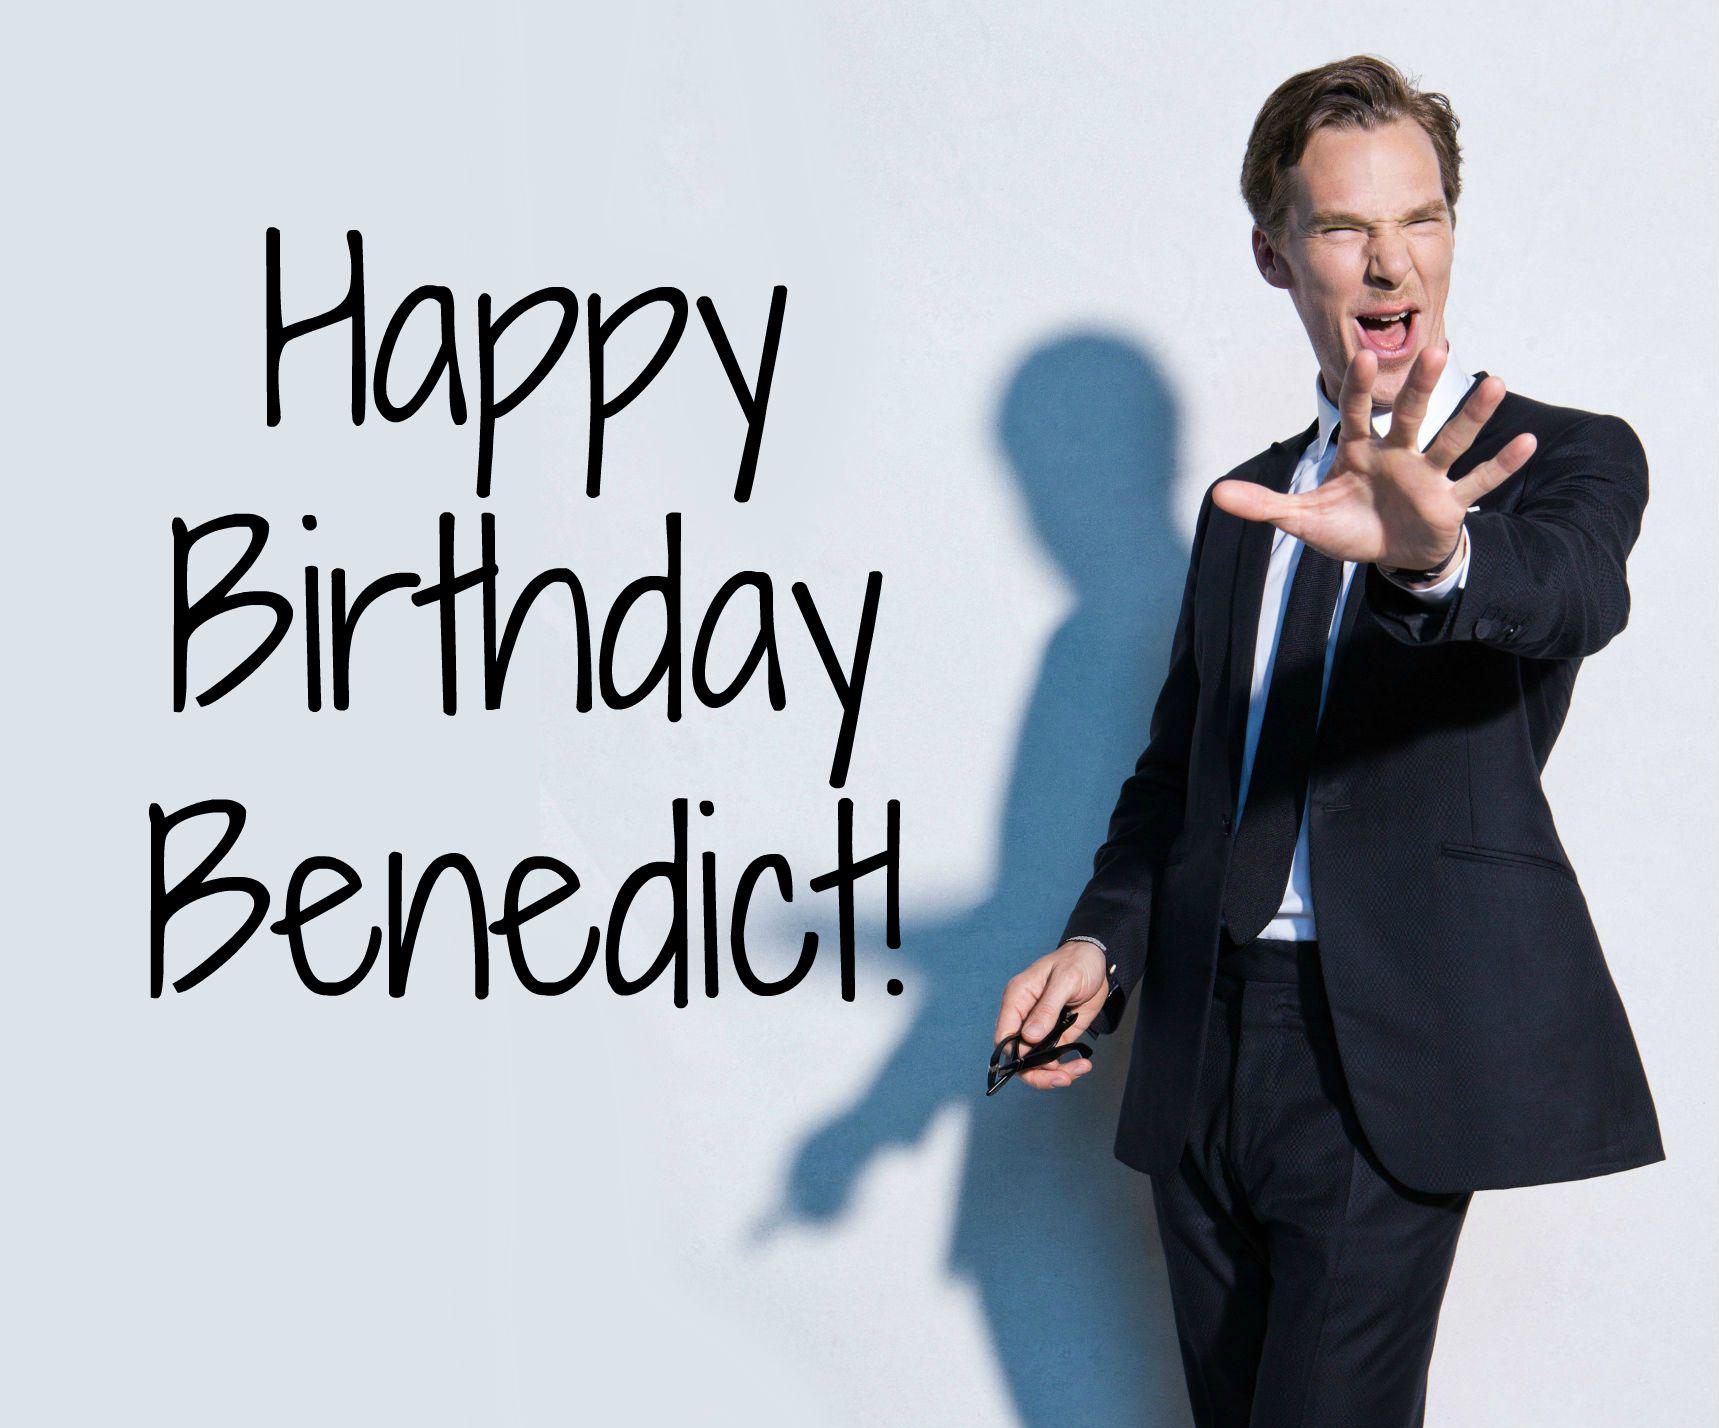 Happy Birthday Benedict Cumberbatch! 